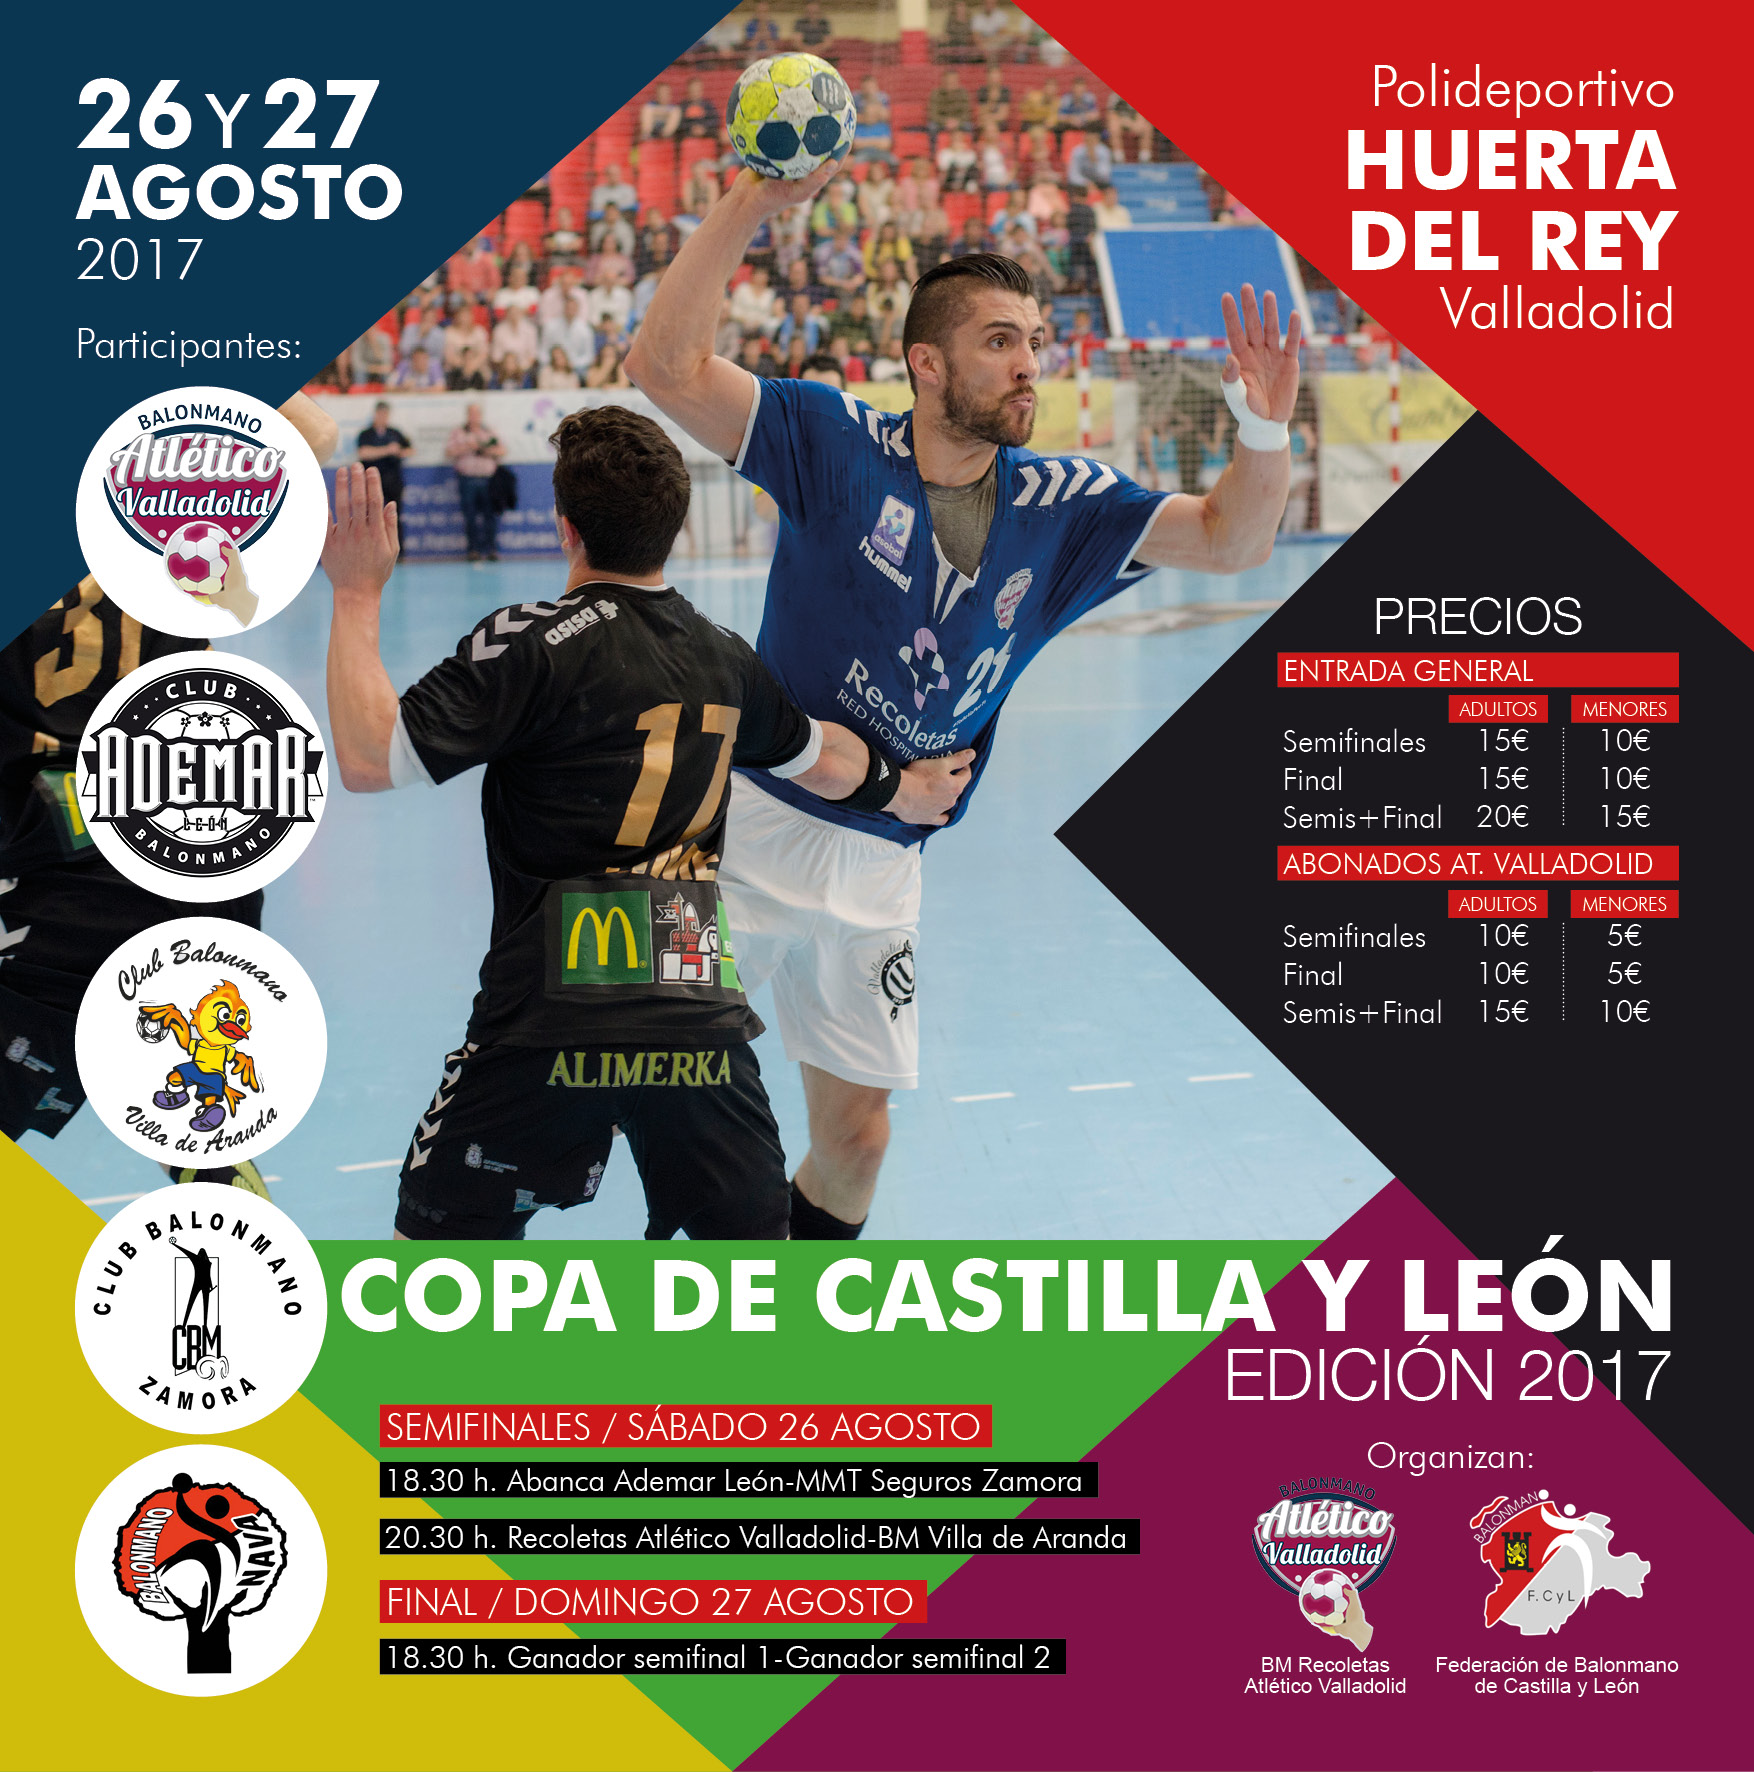 Todo listo para la Copa de Castilla y León 2017 | Galería 1 / 1